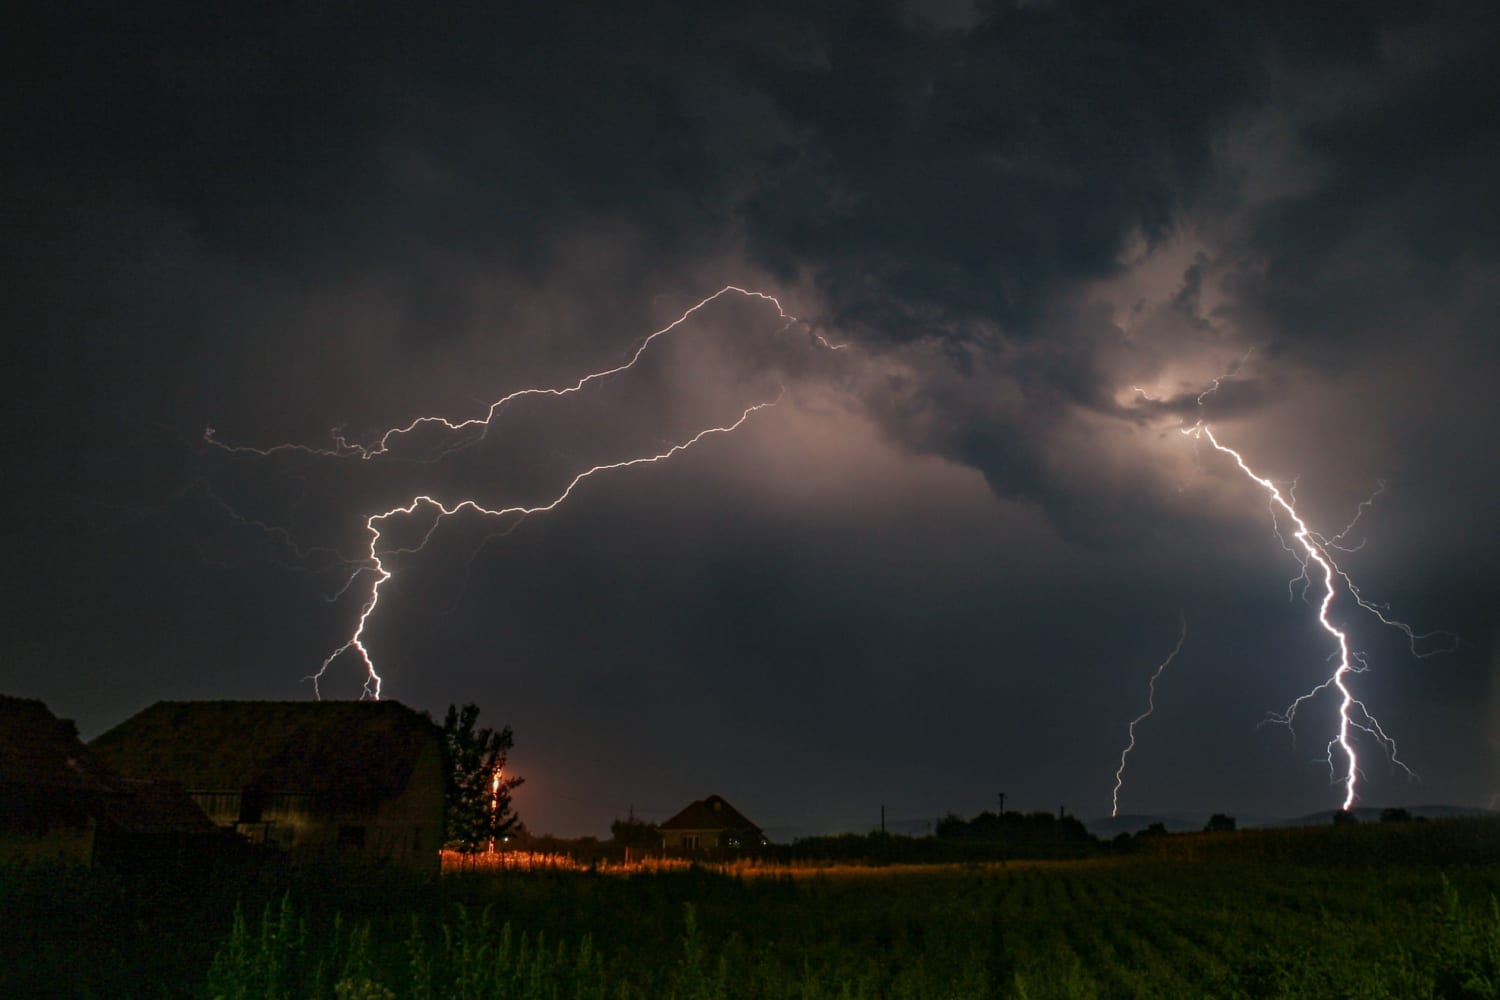 lightning liability insurance how to avoid the shocks of lightning strikes